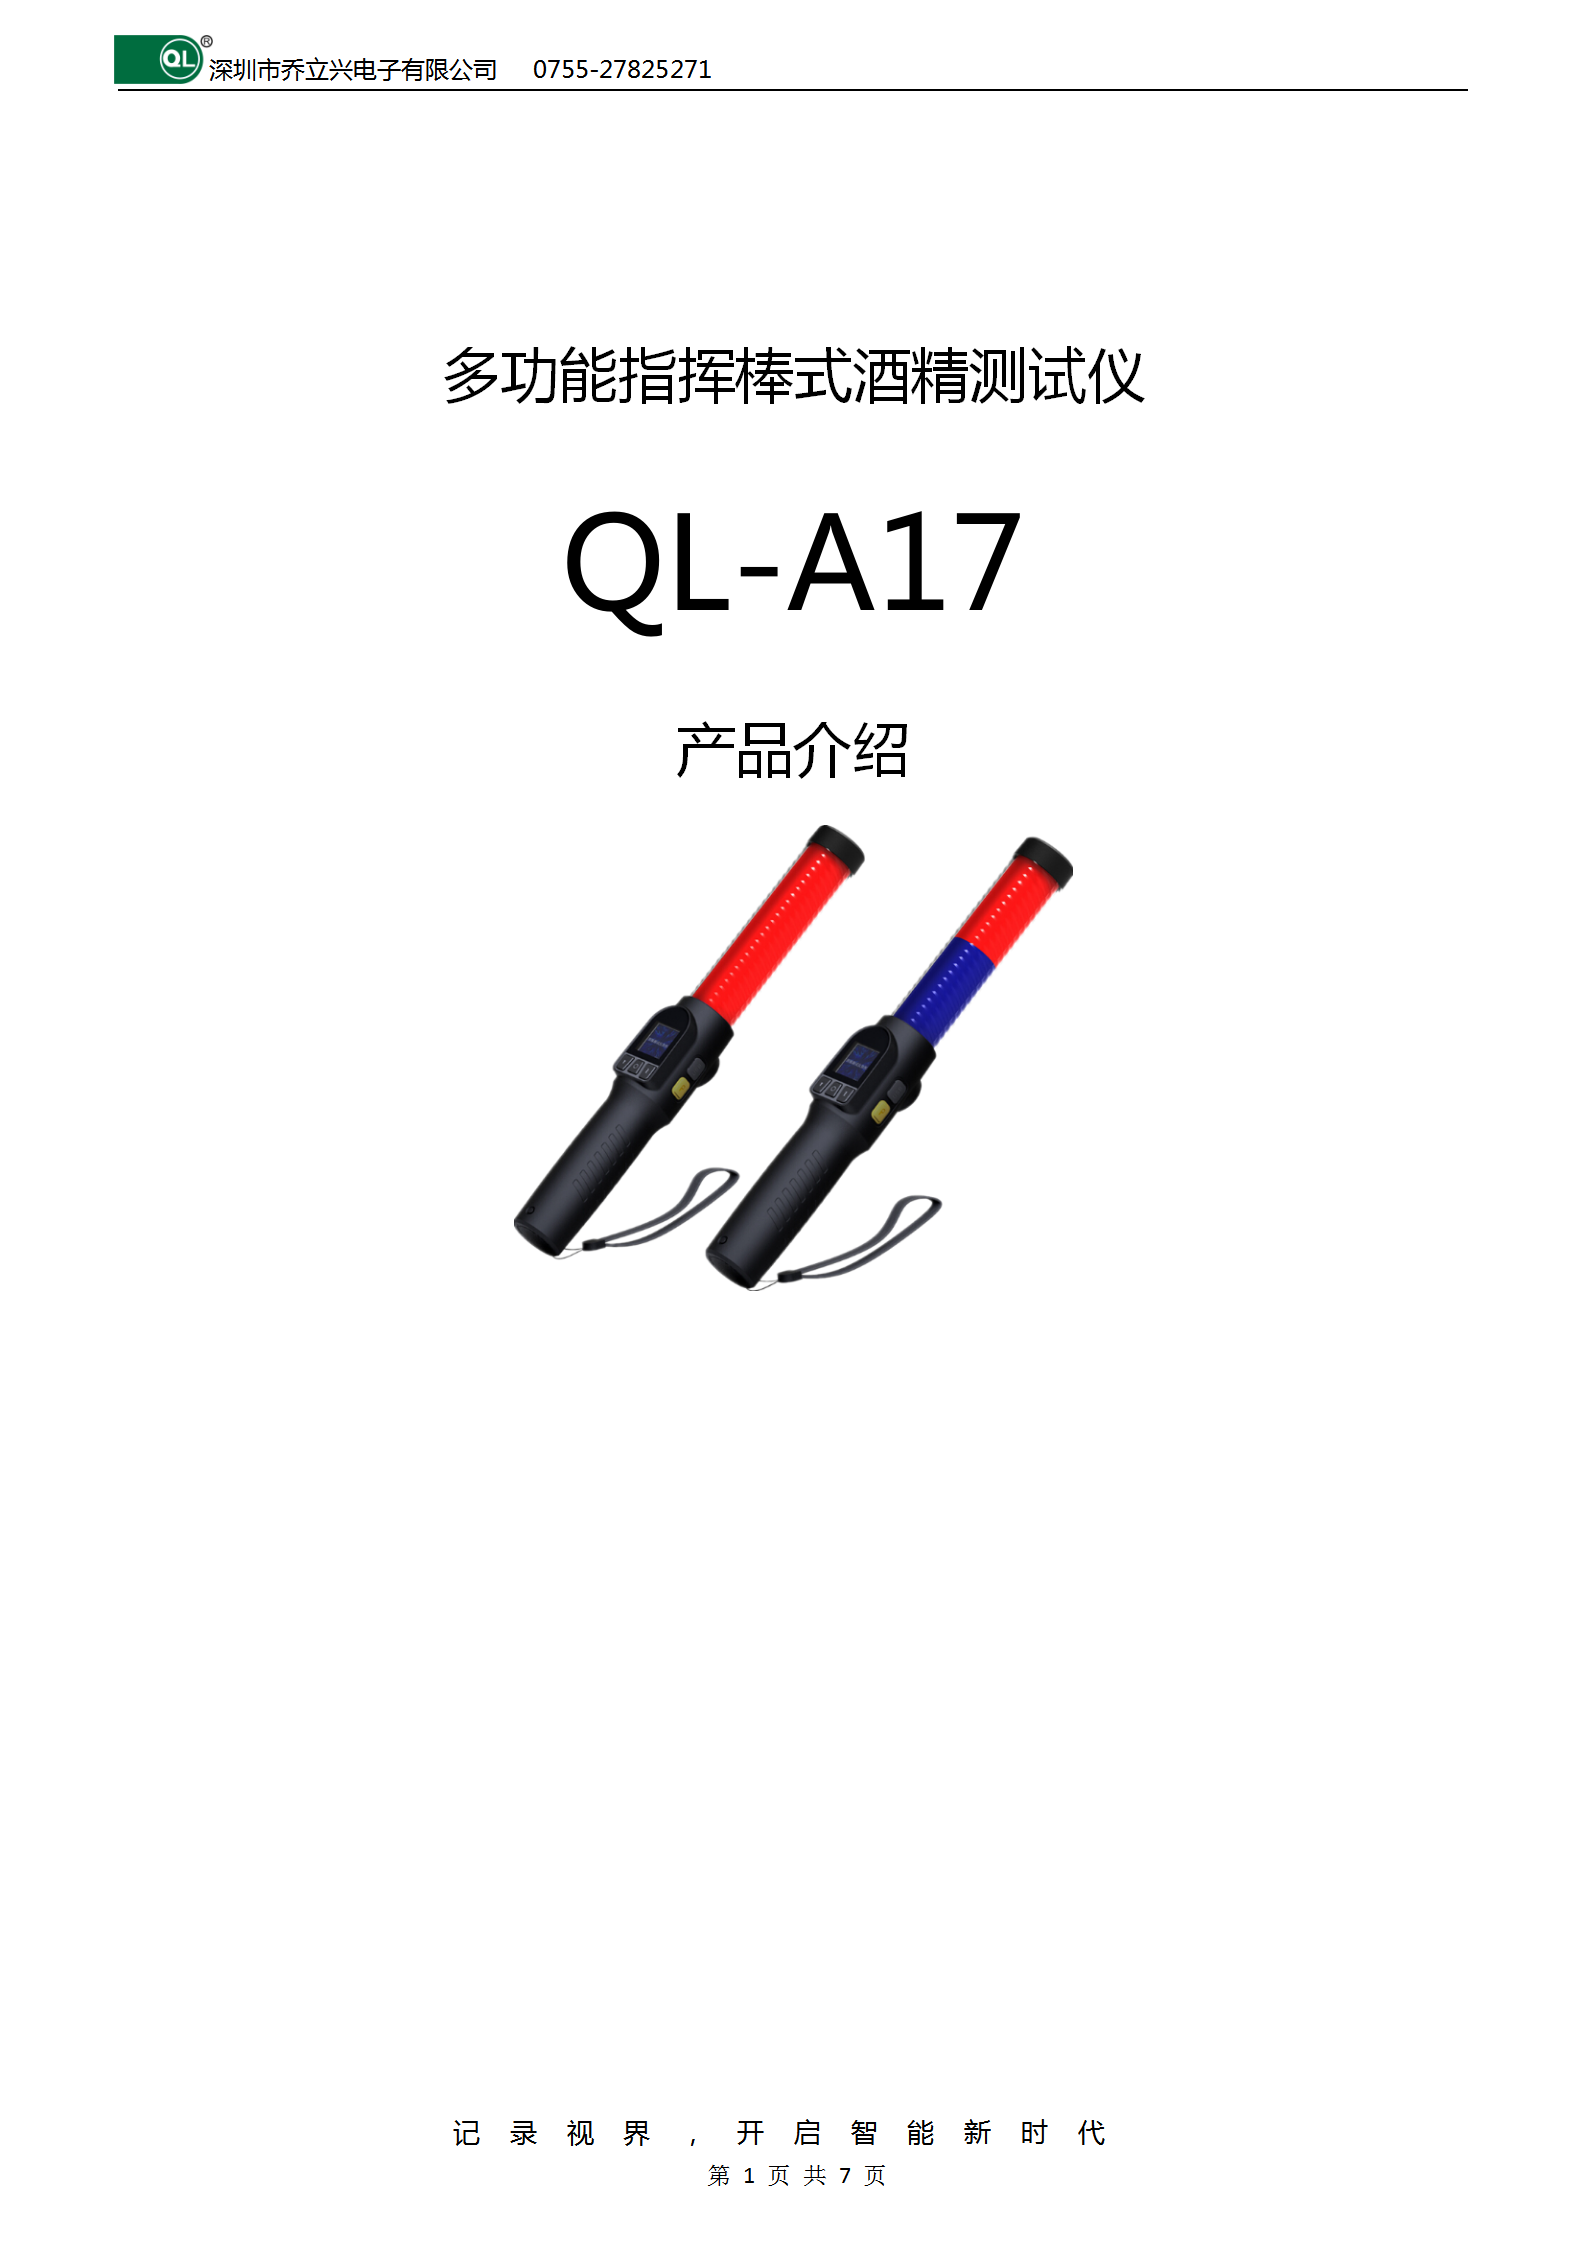 多功能指挥棒式酒精测试仪QL-A17_01.png